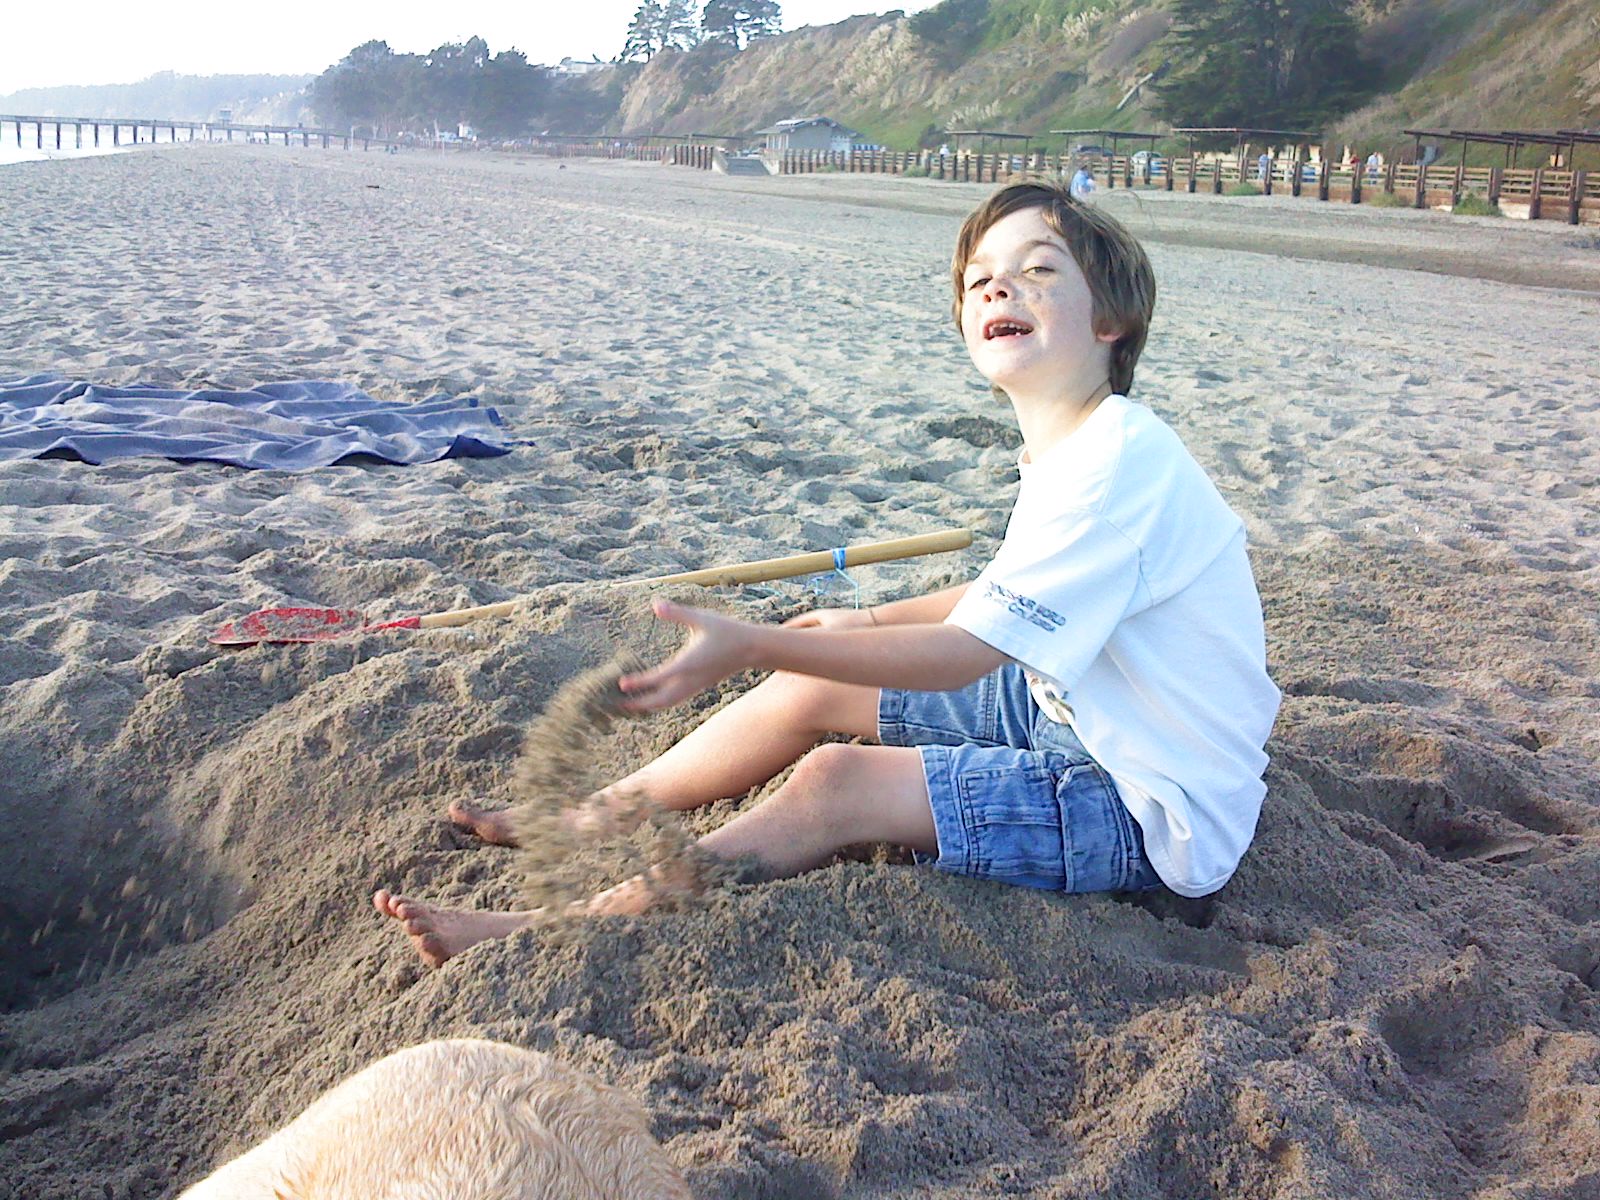 Beach, December 2008